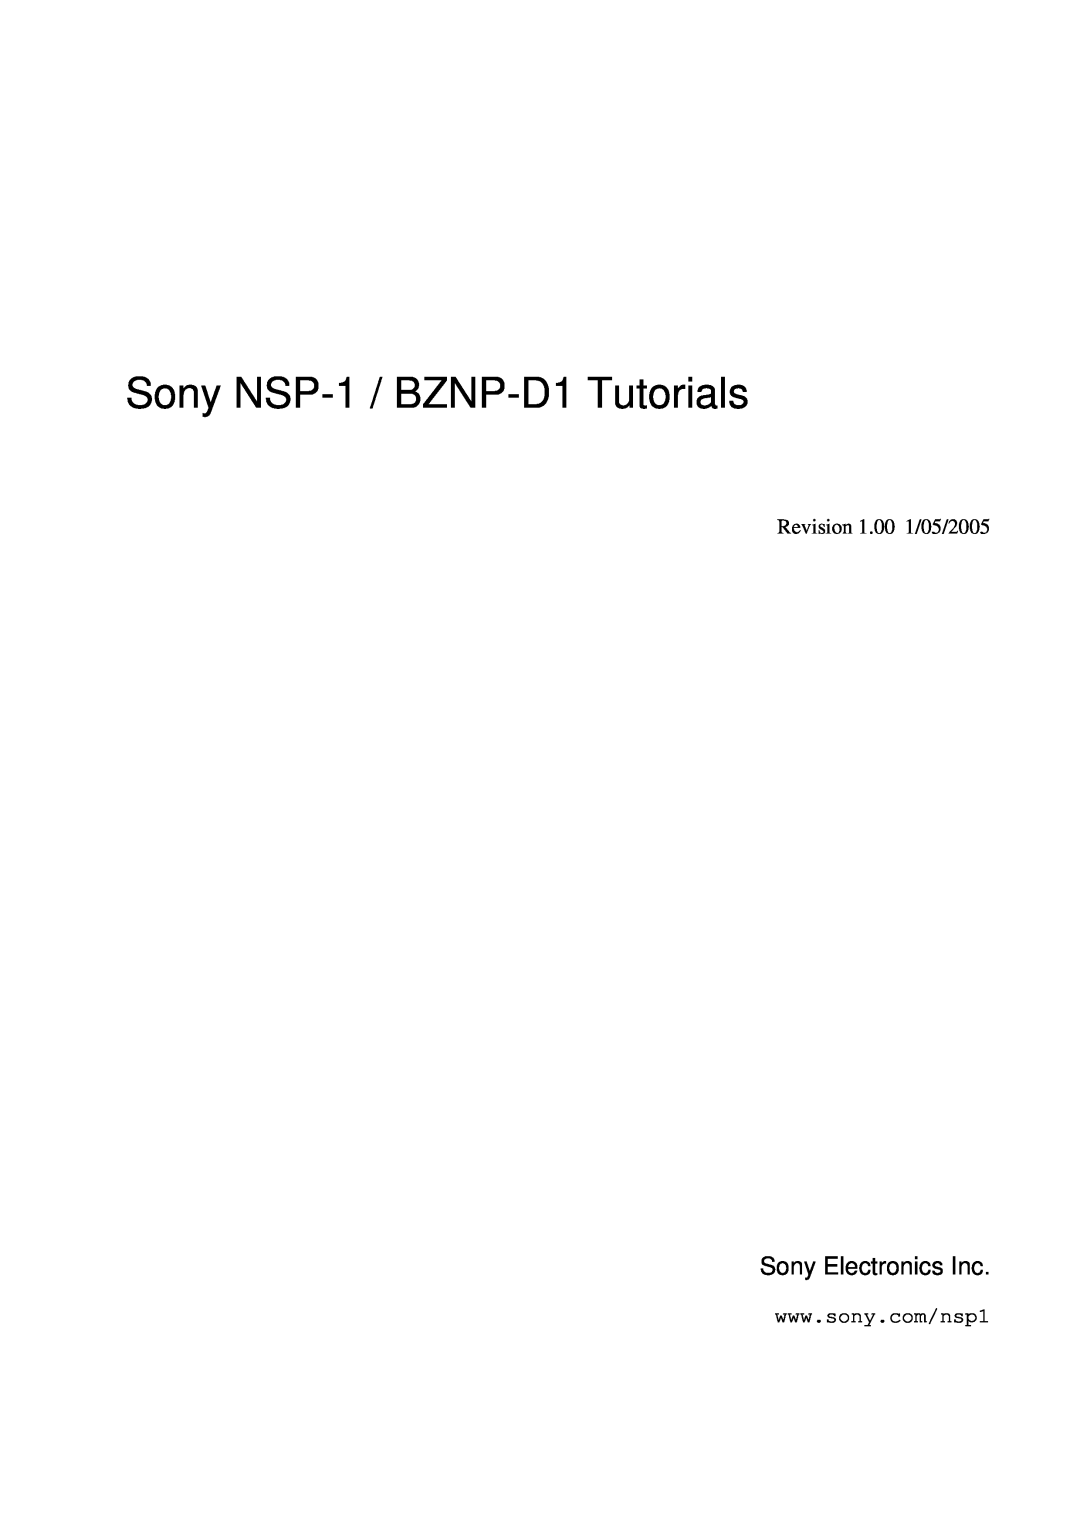 Sony manual Sony NSP-1 / BZNP-D1Tutorials, Sony Electronics Inc, Revision 1.00 1/05/2005 